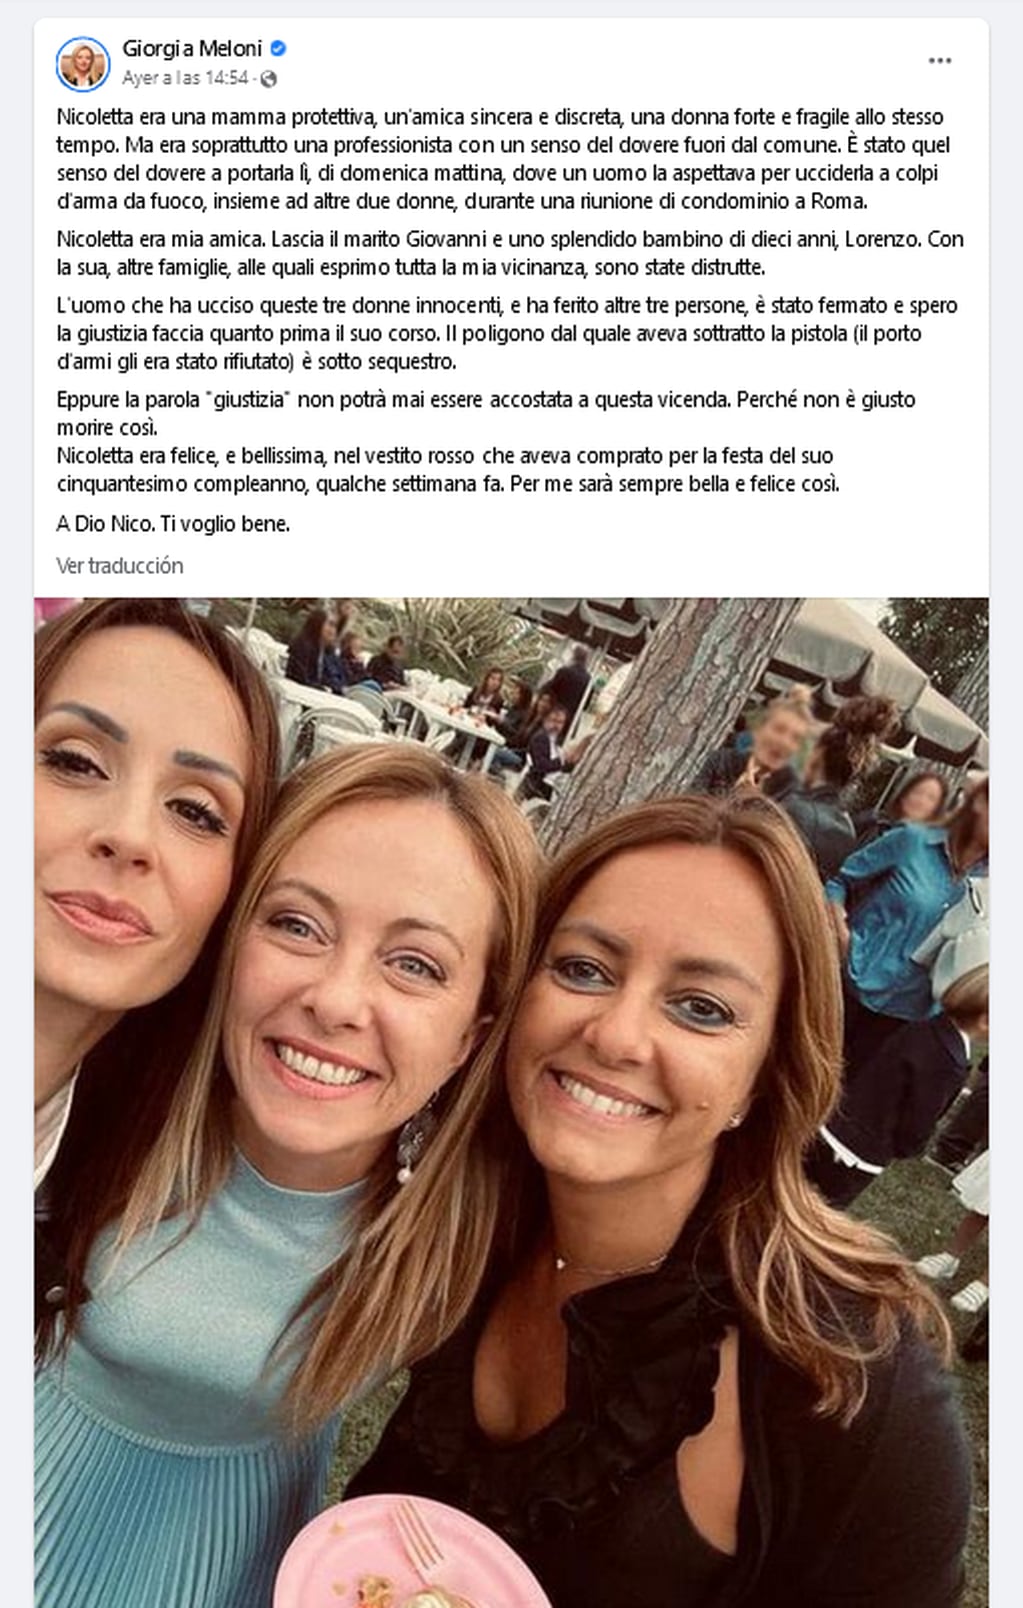 Nicoletta Golisano (derecha) fue una de las víctimas fatales en el tiroteo. Era amiga de Giorgia Meloni. Facebook